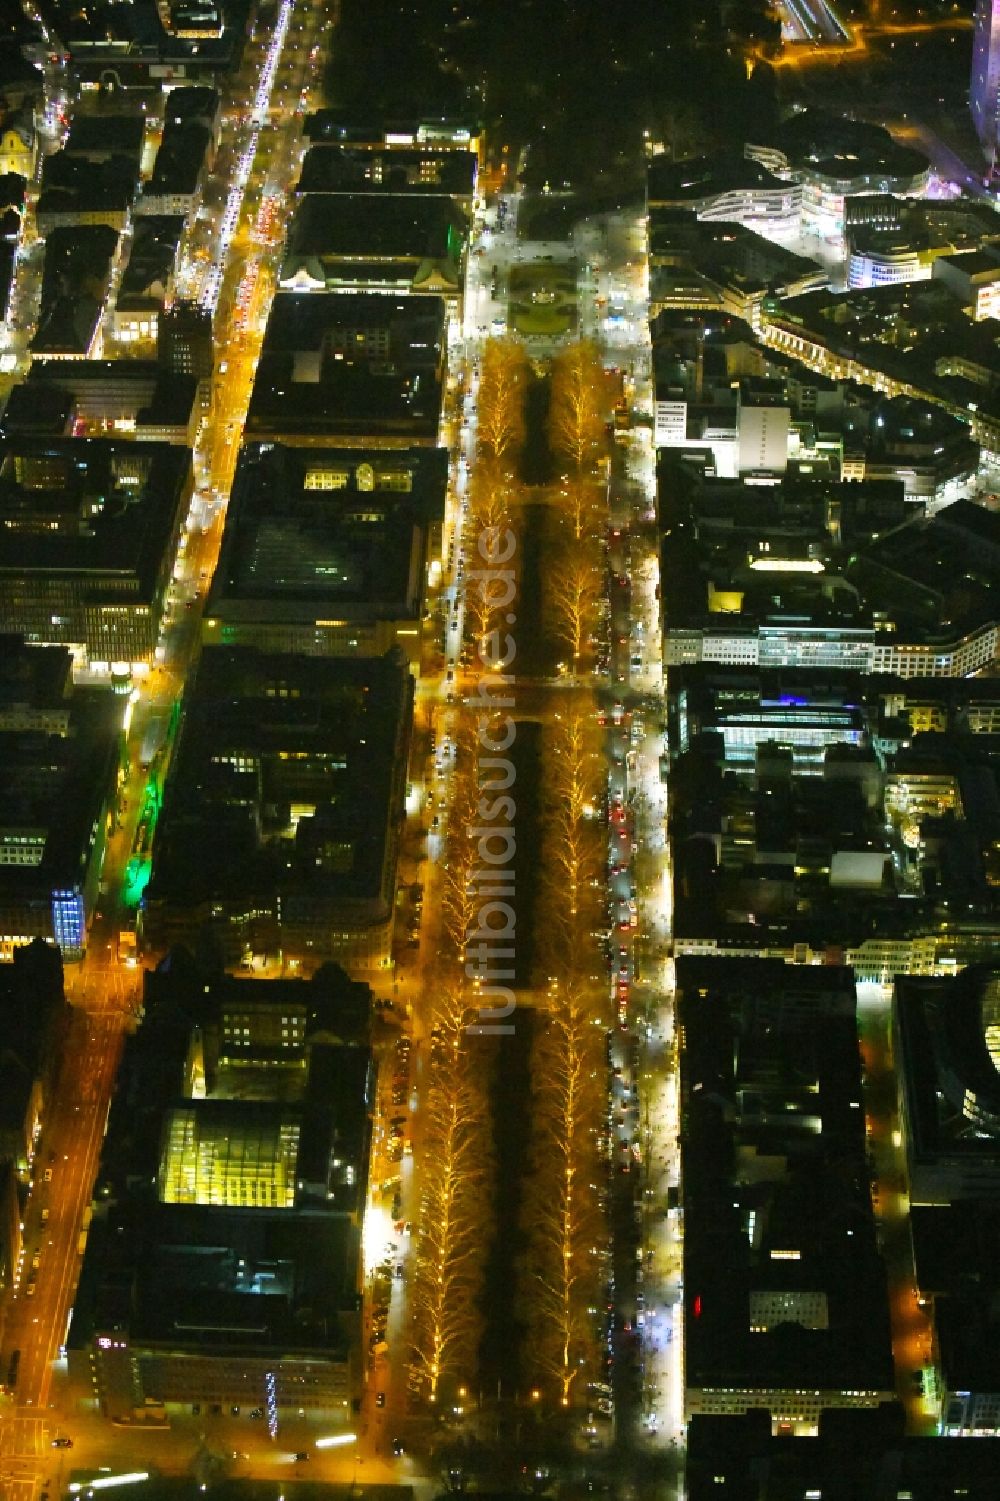 Nacht-Luftaufnahme Düsseldorf - Nachtluftbild Straßenführung der bekannten Flaniermeile und Einkaufsstraße Königsallee im Ortsteil Stadtmitte in Düsseldorf im Bundesland Nordrhein-Westfalen, Deutschland